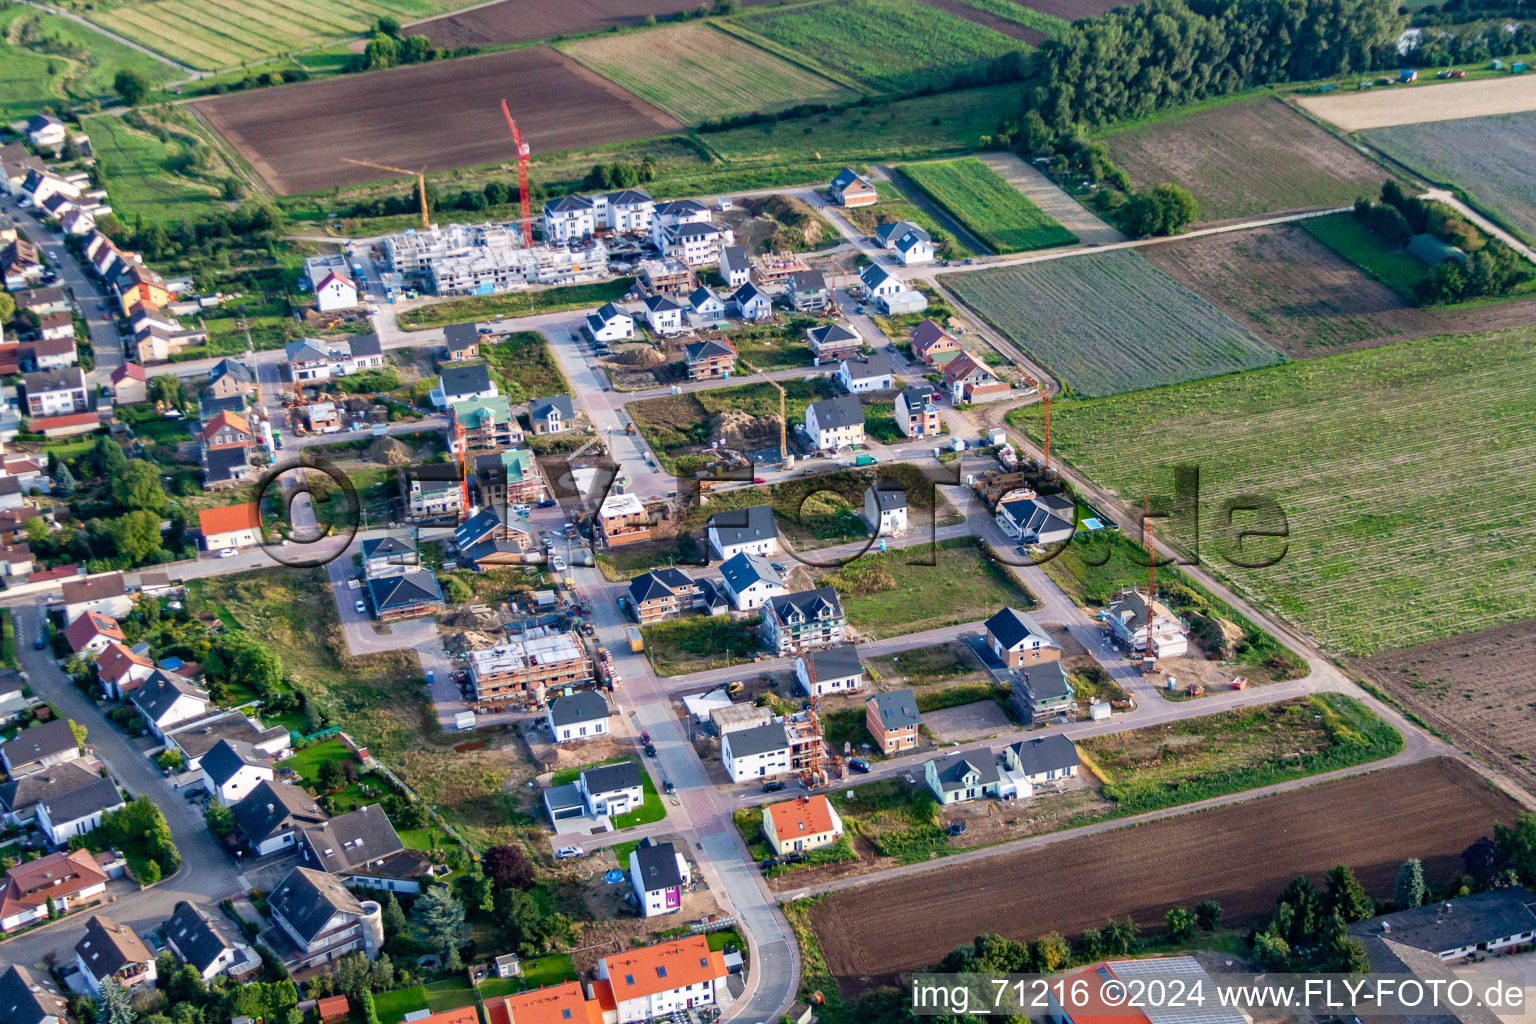 New development area Betheny-Allee in the district Schauernheim in Dannstadt-Schauernheim in the state Rhineland-Palatinate, Germany